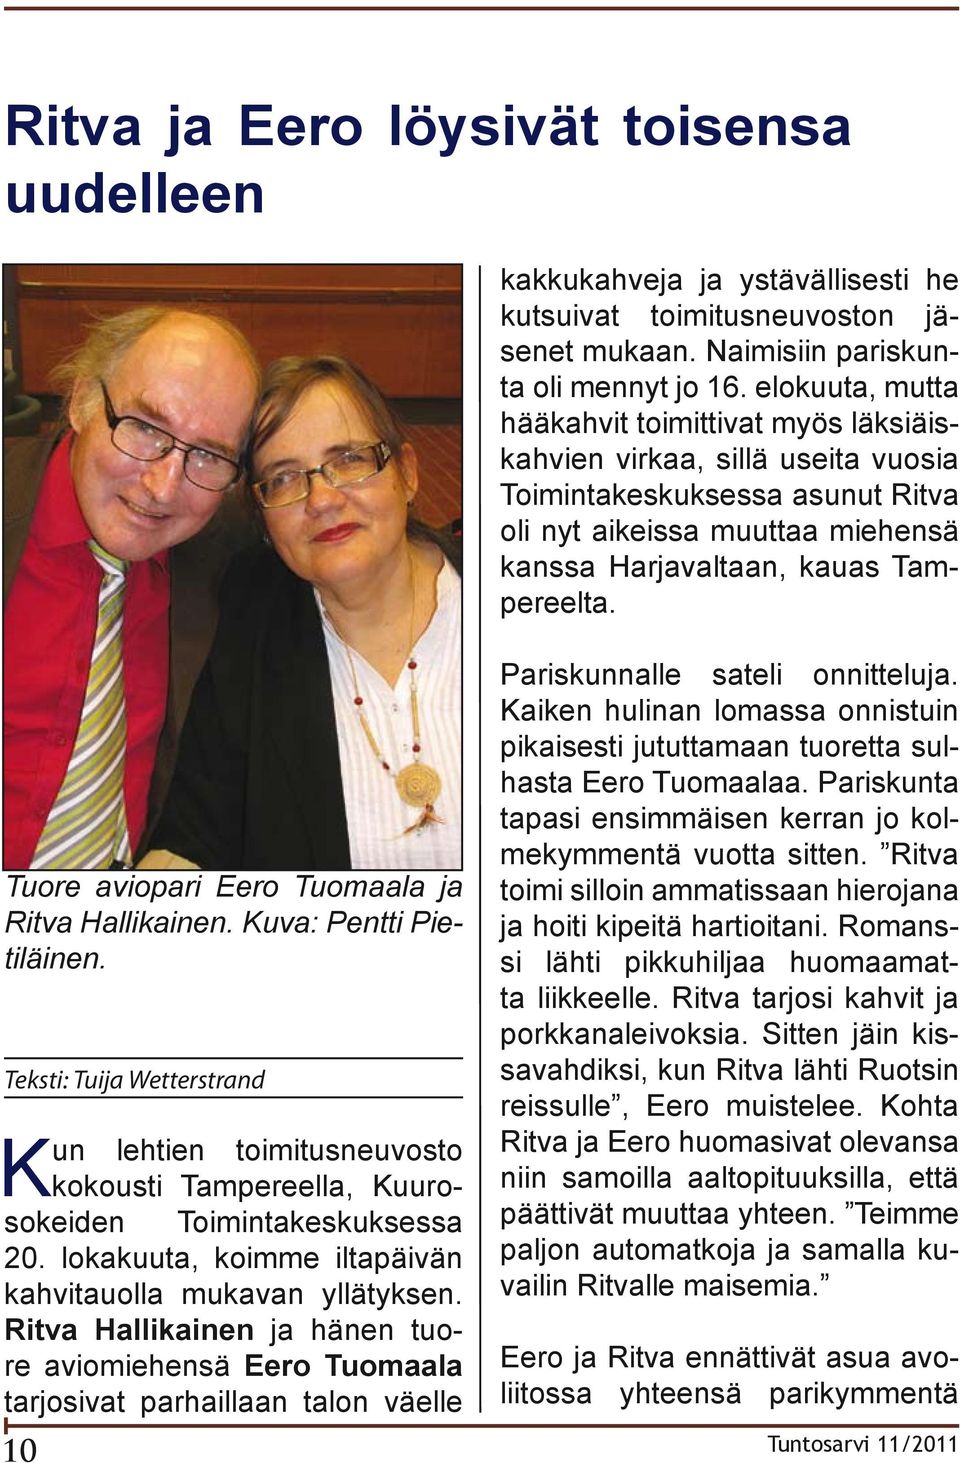 Ritva Hallikainen ja hänen tuore aviomiehensä Eero Tuomaala tarjosivat parhaillaan talon väelle kakkukahveja ja ystävällisesti he kutsuivat toimitusneuvoston jäsenet mukaan.